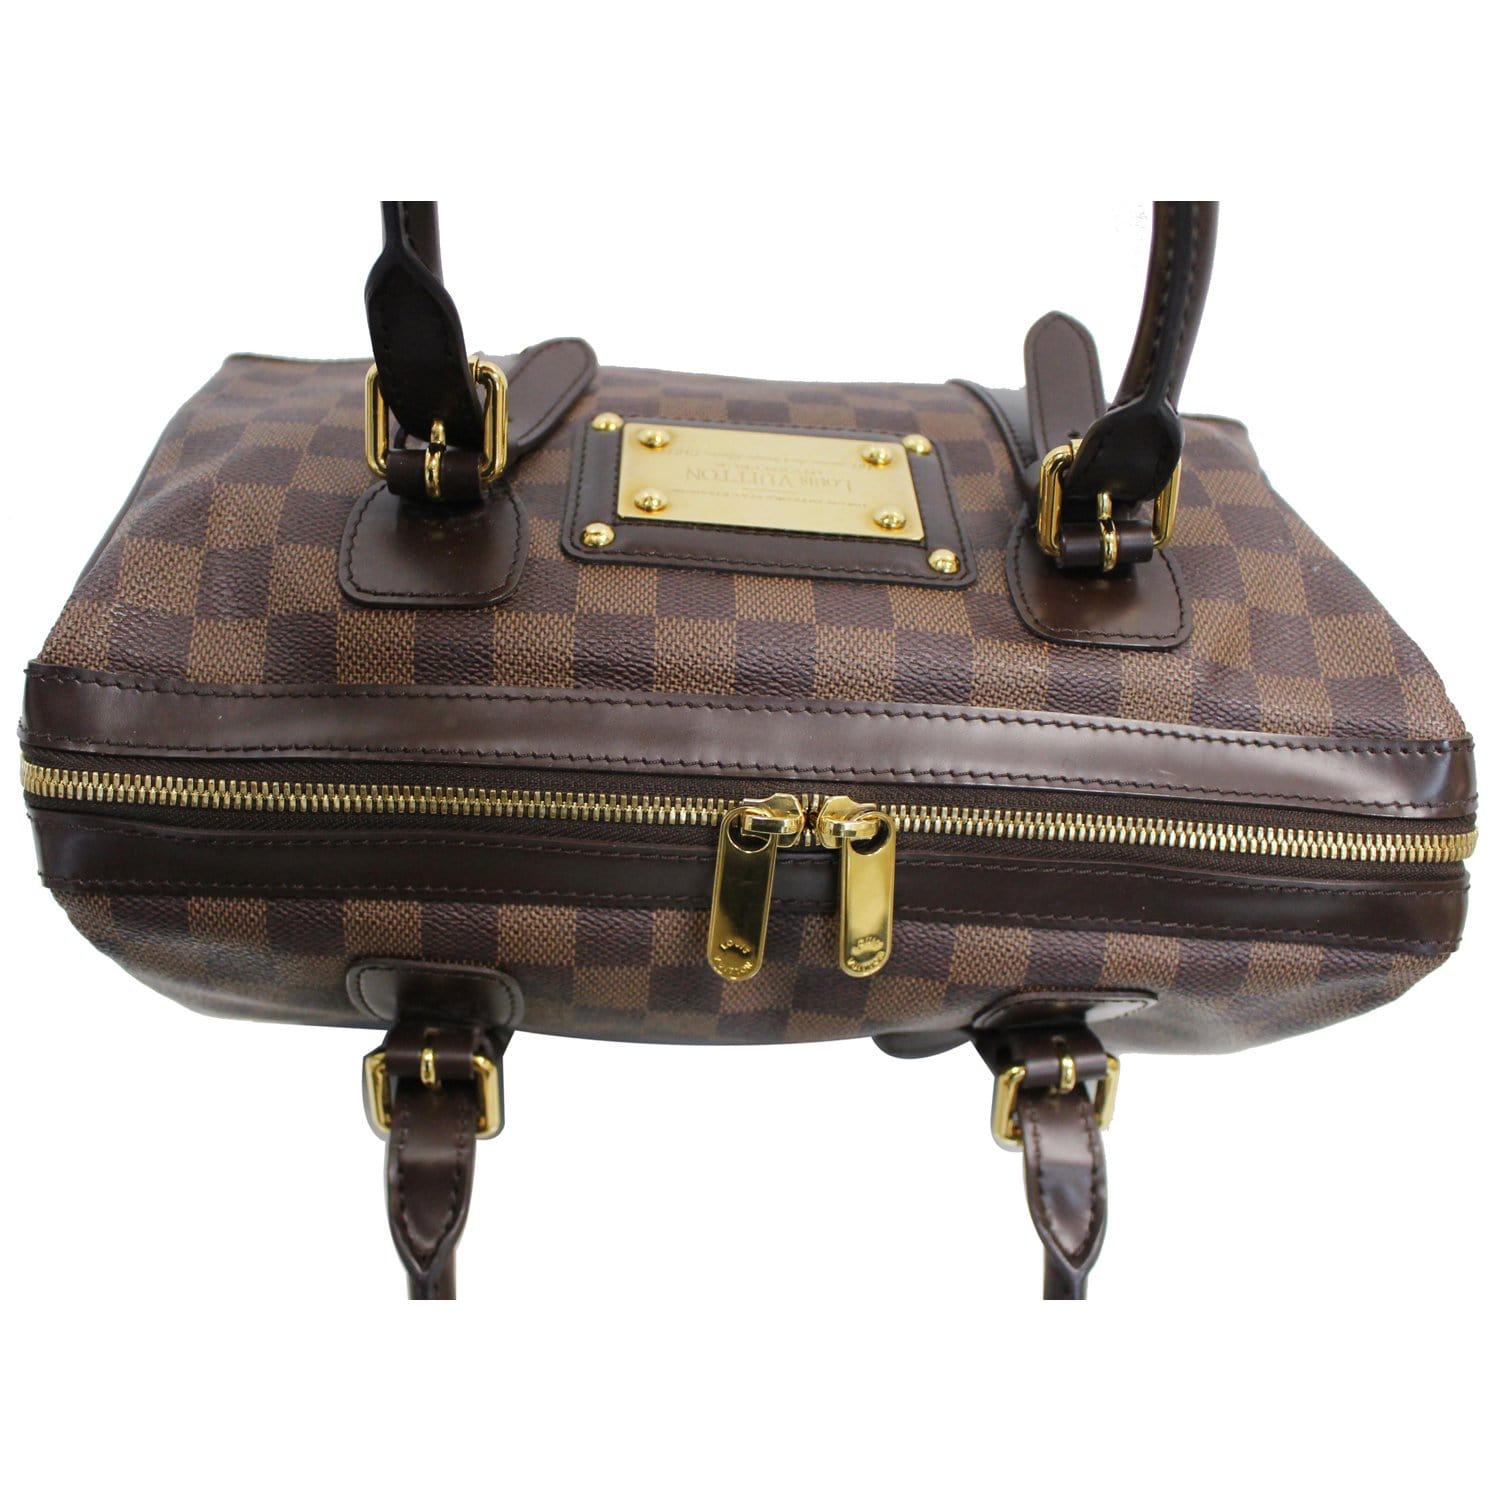 Berkeley cloth handbag Louis Vuitton Brown in Cloth - 25290095